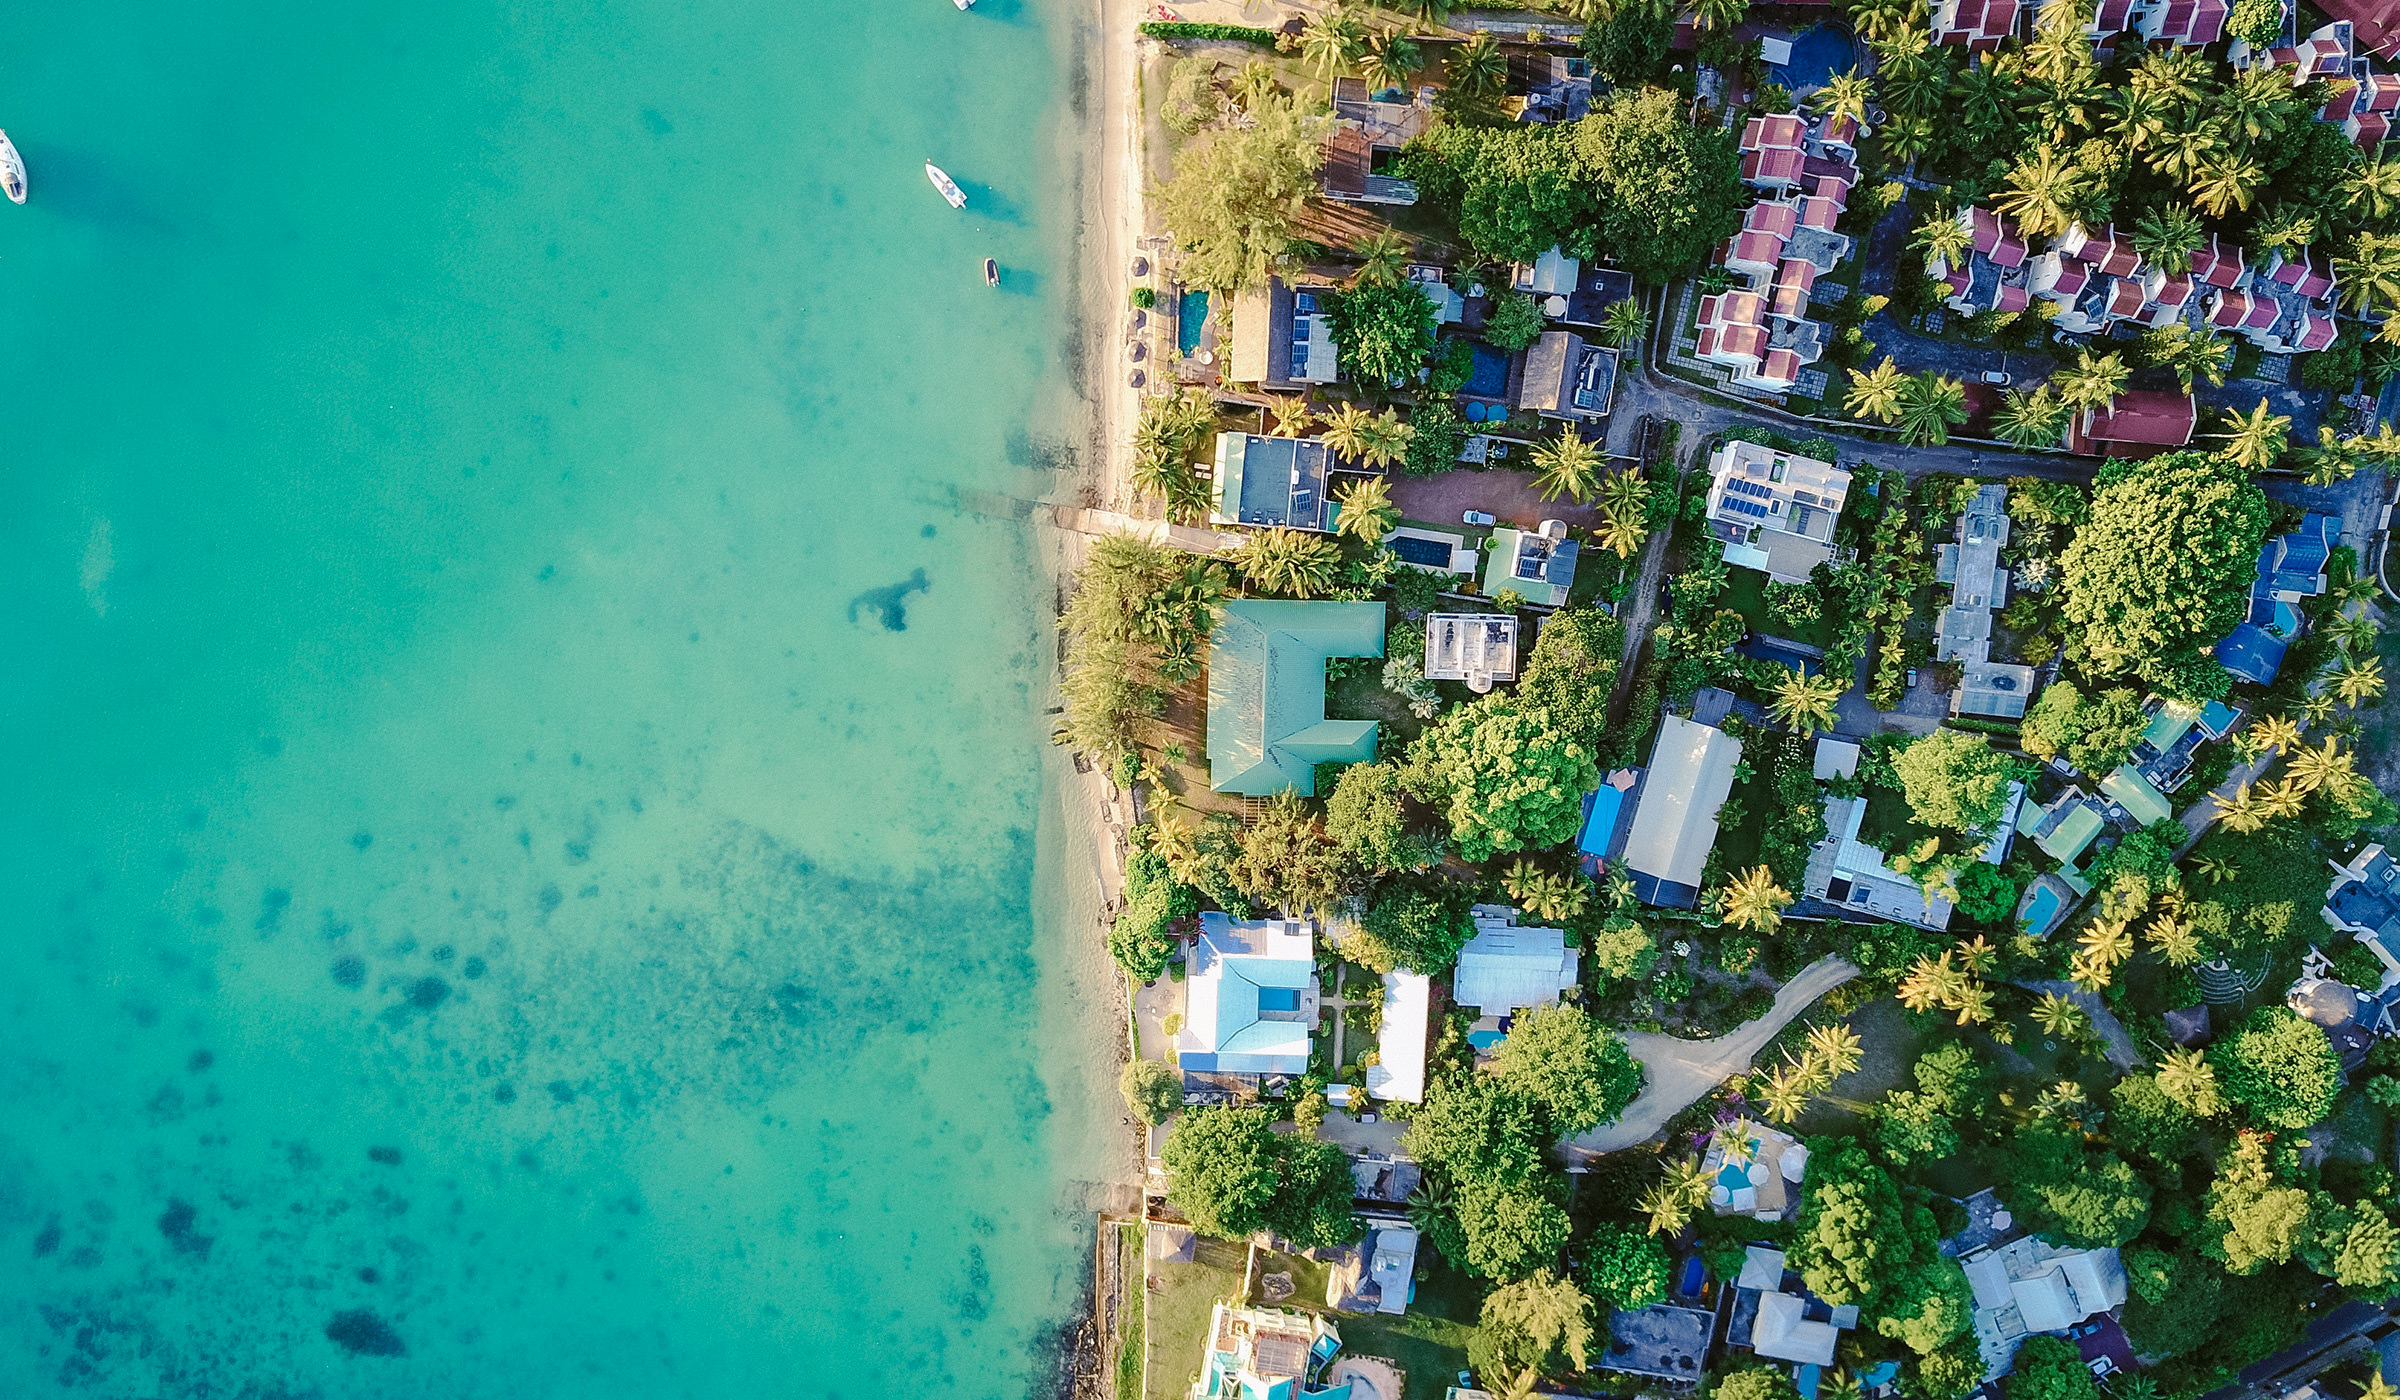 Photographie d'ambiance vue de haut d'une côte des îles des Caraïbes